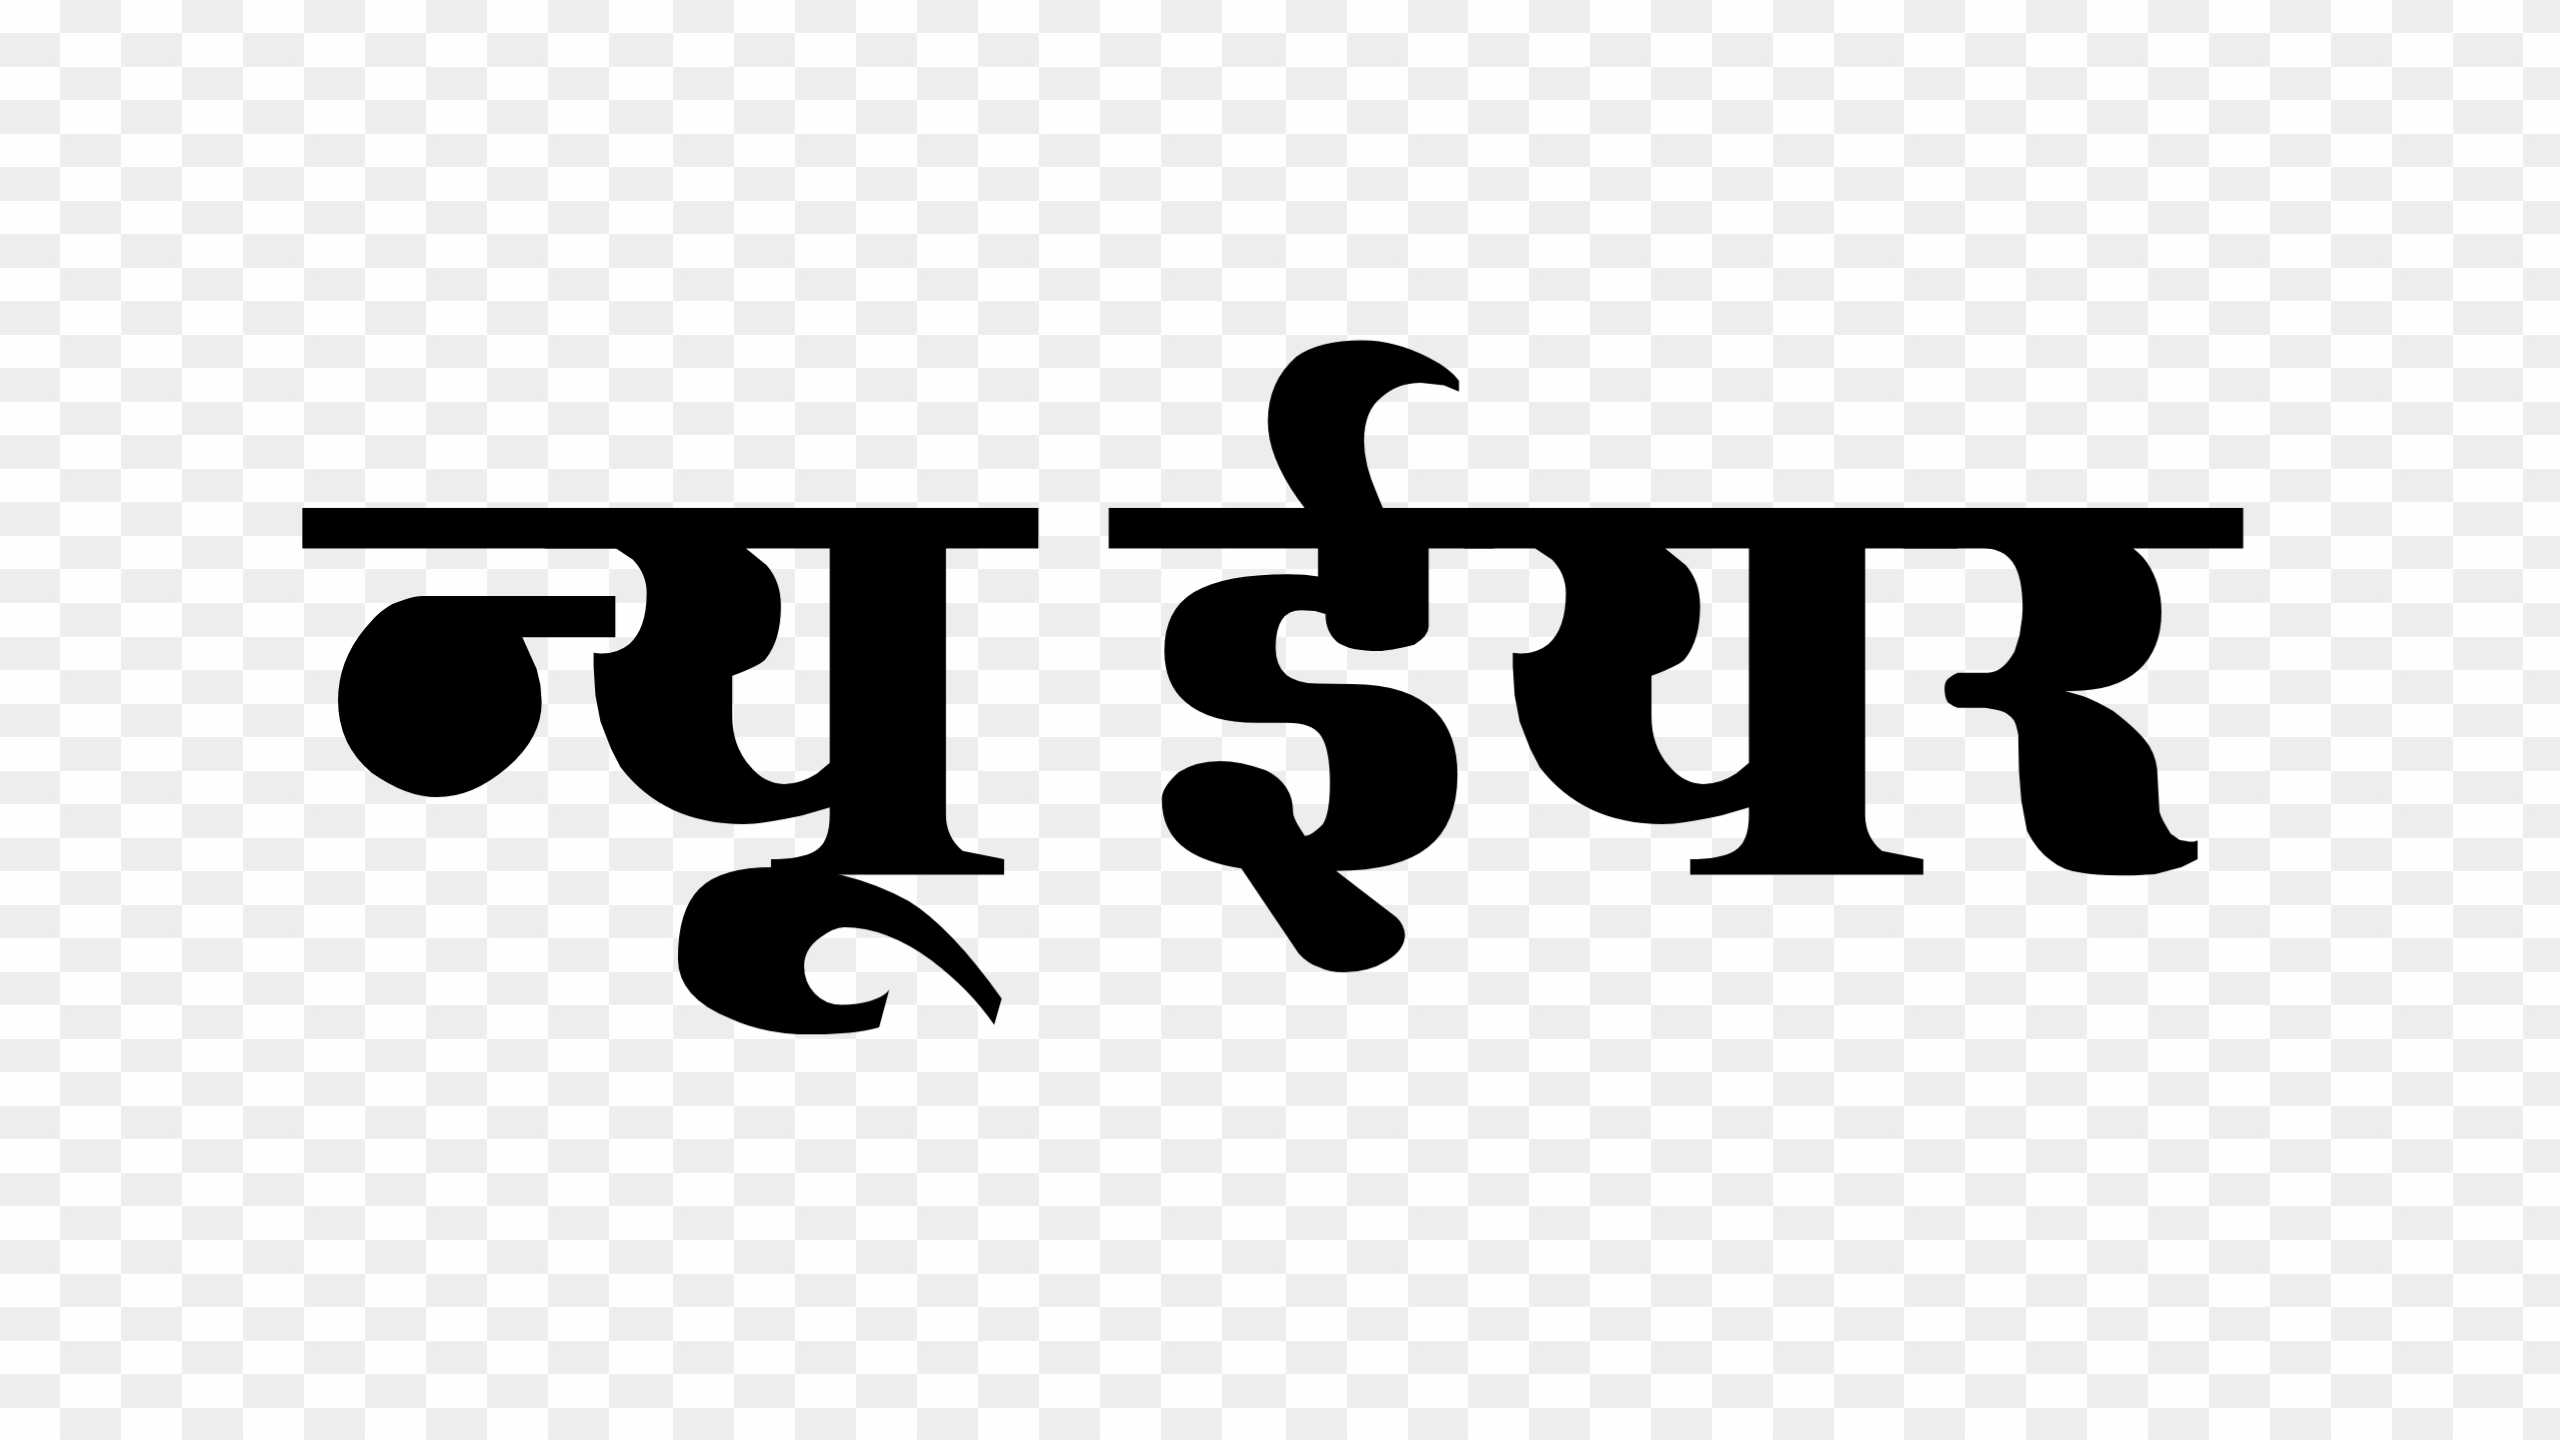 New year hindi text png